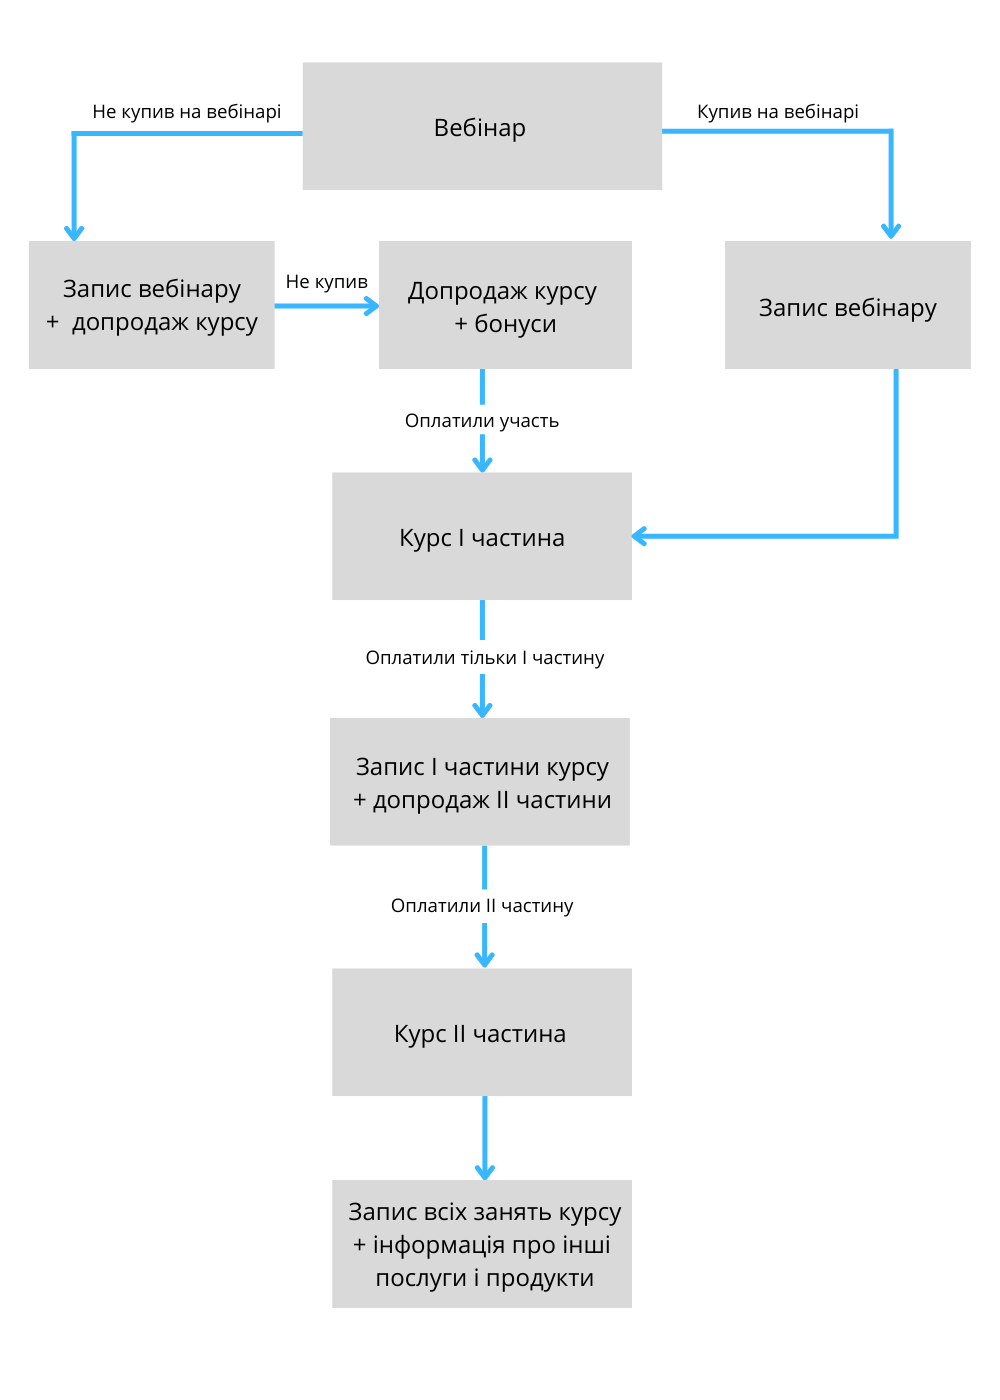 Схема пропозицій для клієнта після вебінару